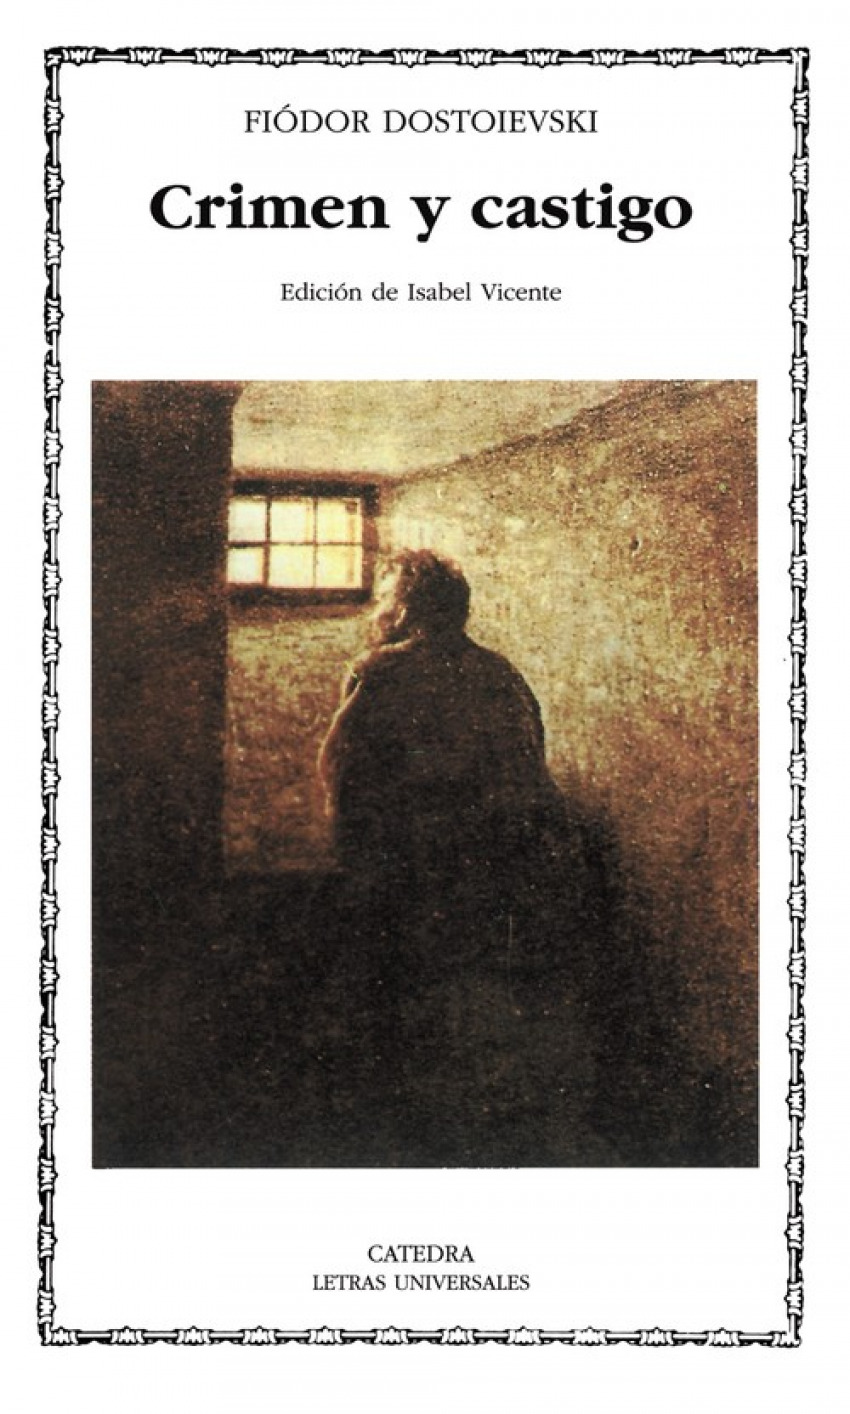 Crimen y castigo - Dostoievski, Fiódor M.